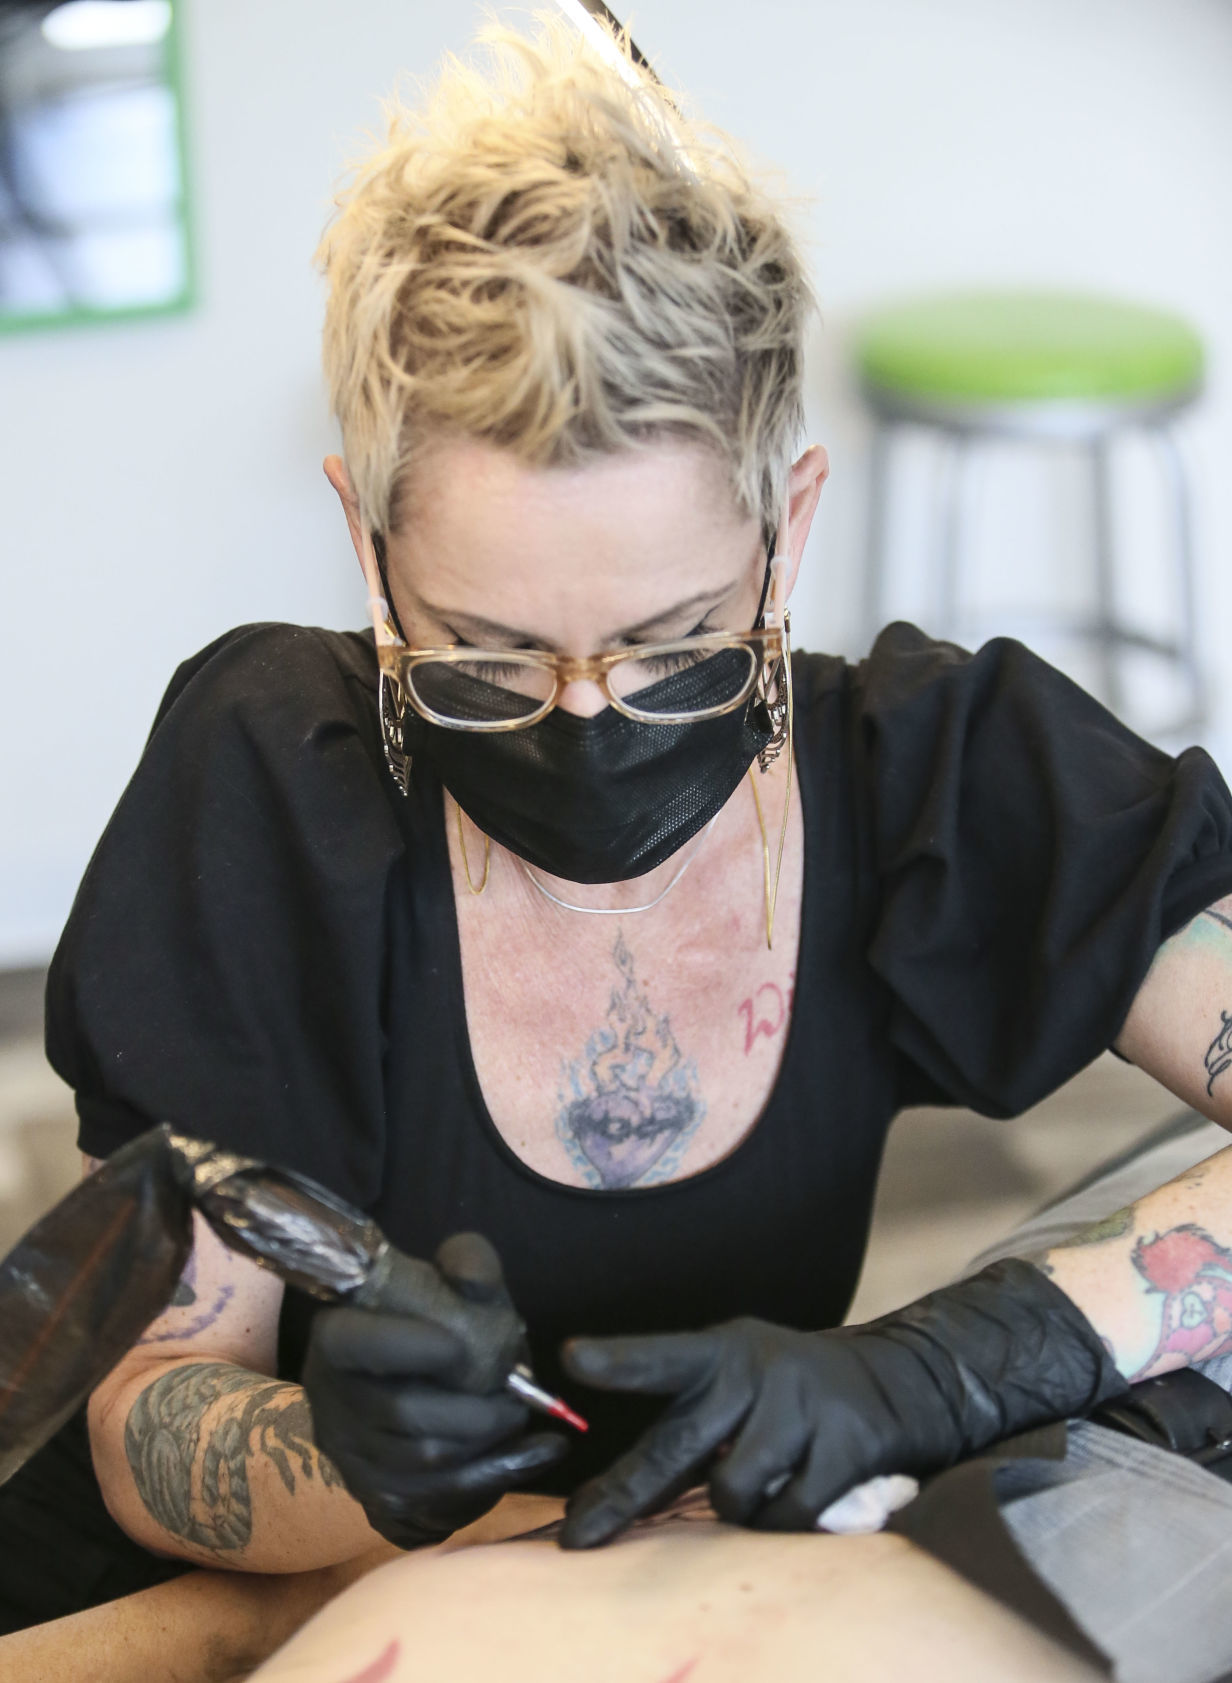 Professional Tattoo Artists  Danville IL  No Regrets Tattoos  Body  Piercing